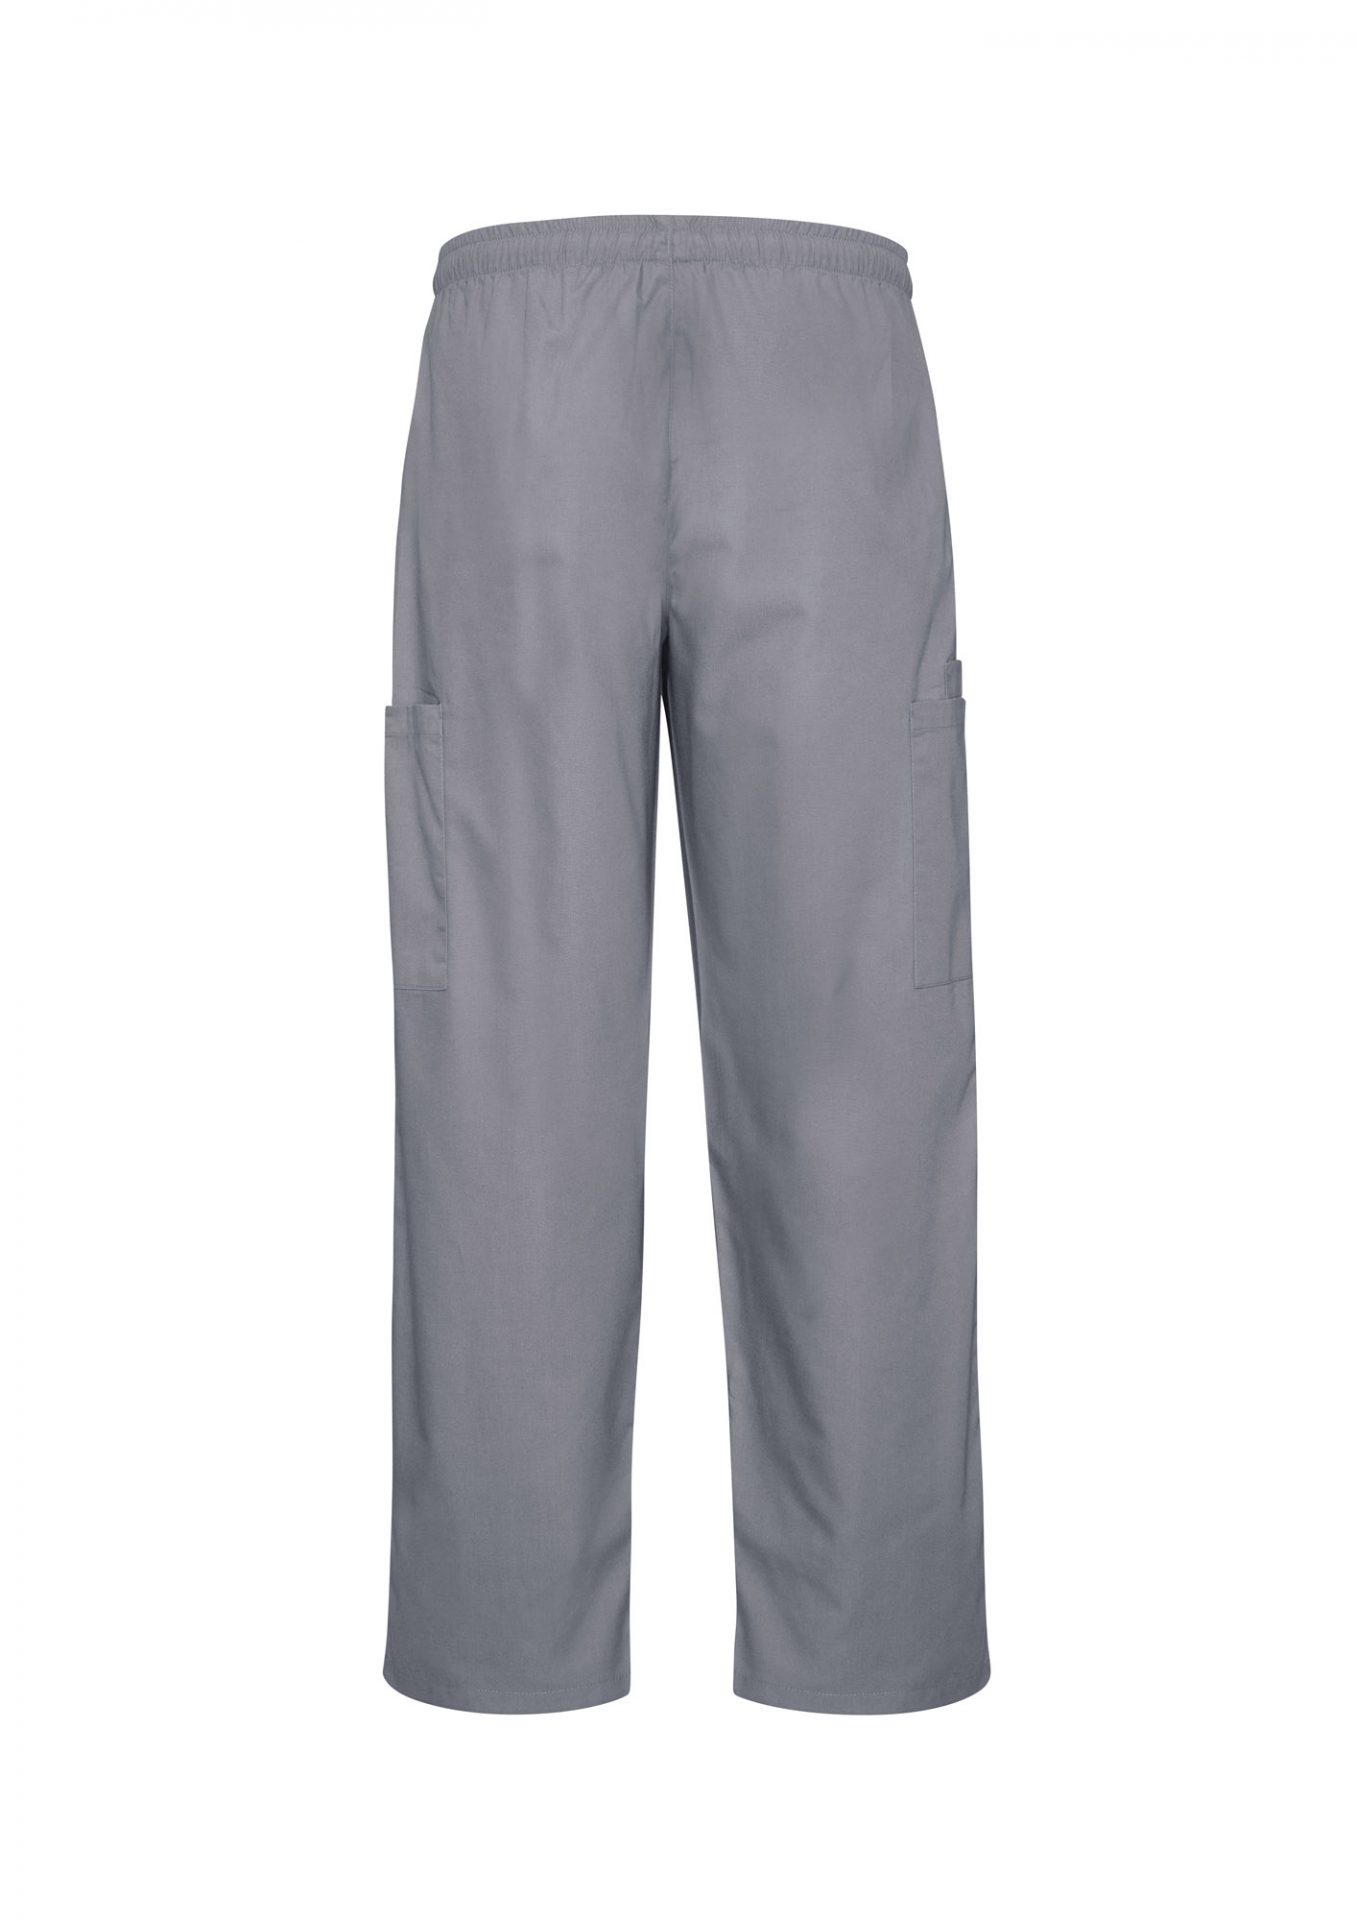 Mens Classic Scrub Pants Grey - Uniform Edit